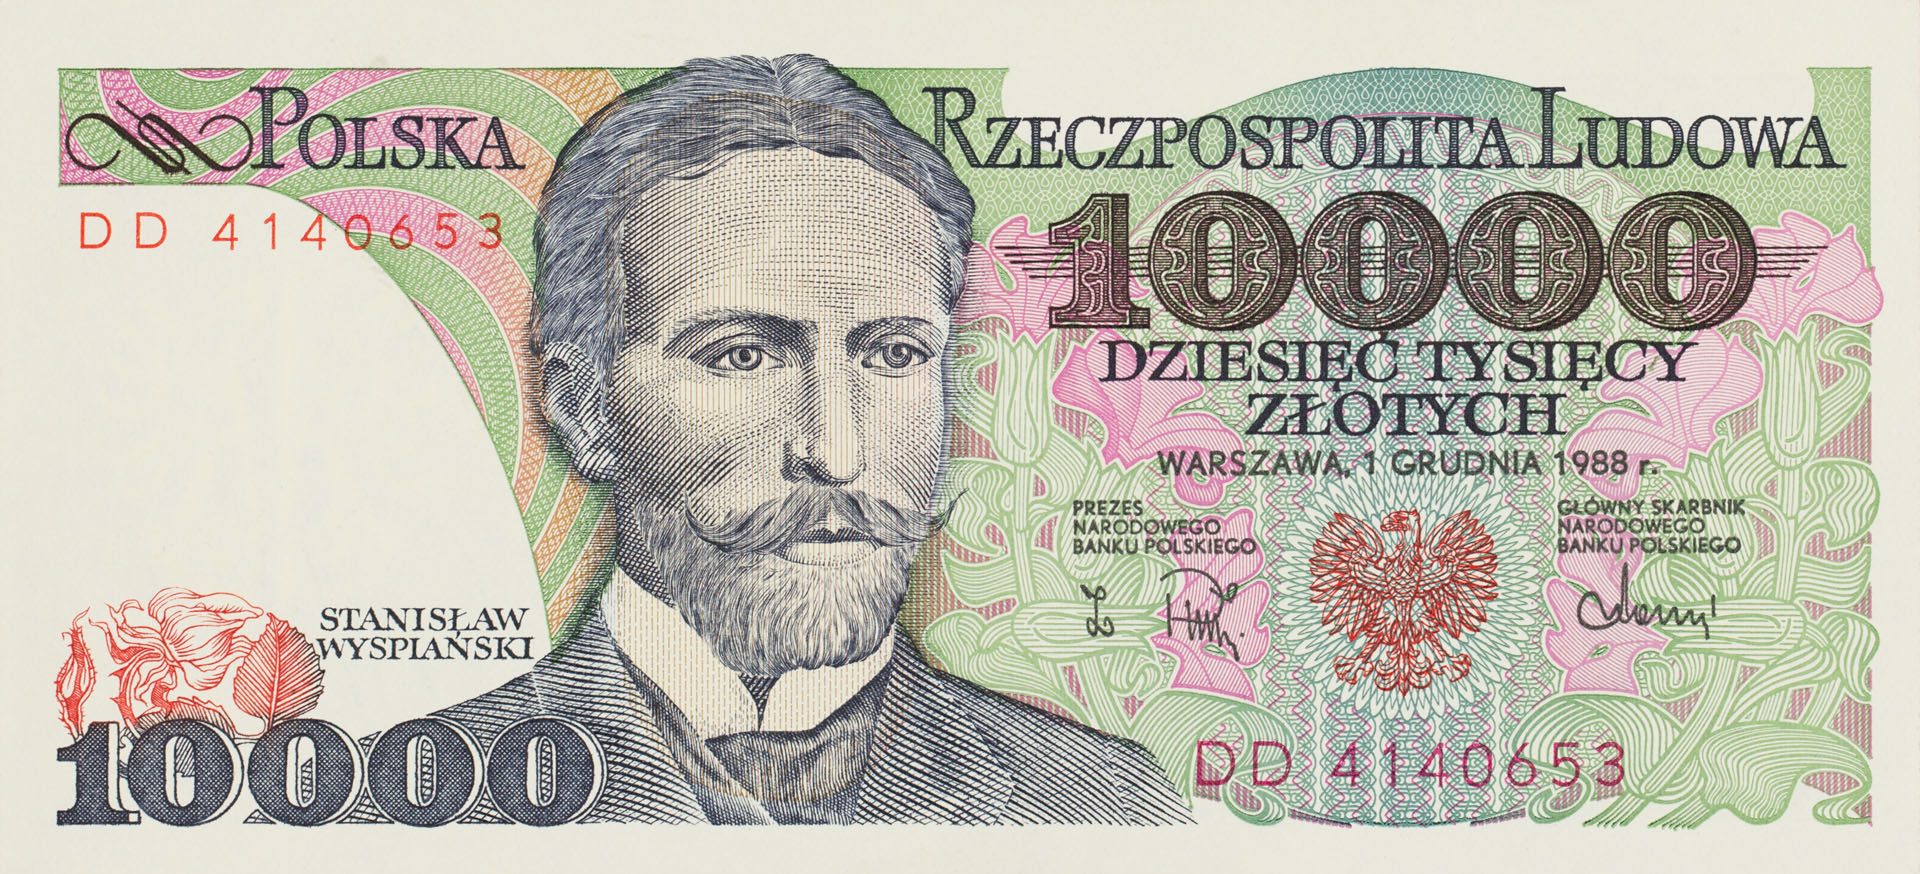 Banknot 10000 złotych | Muzeum Papiernictwa w Dusznikach-Zdroju